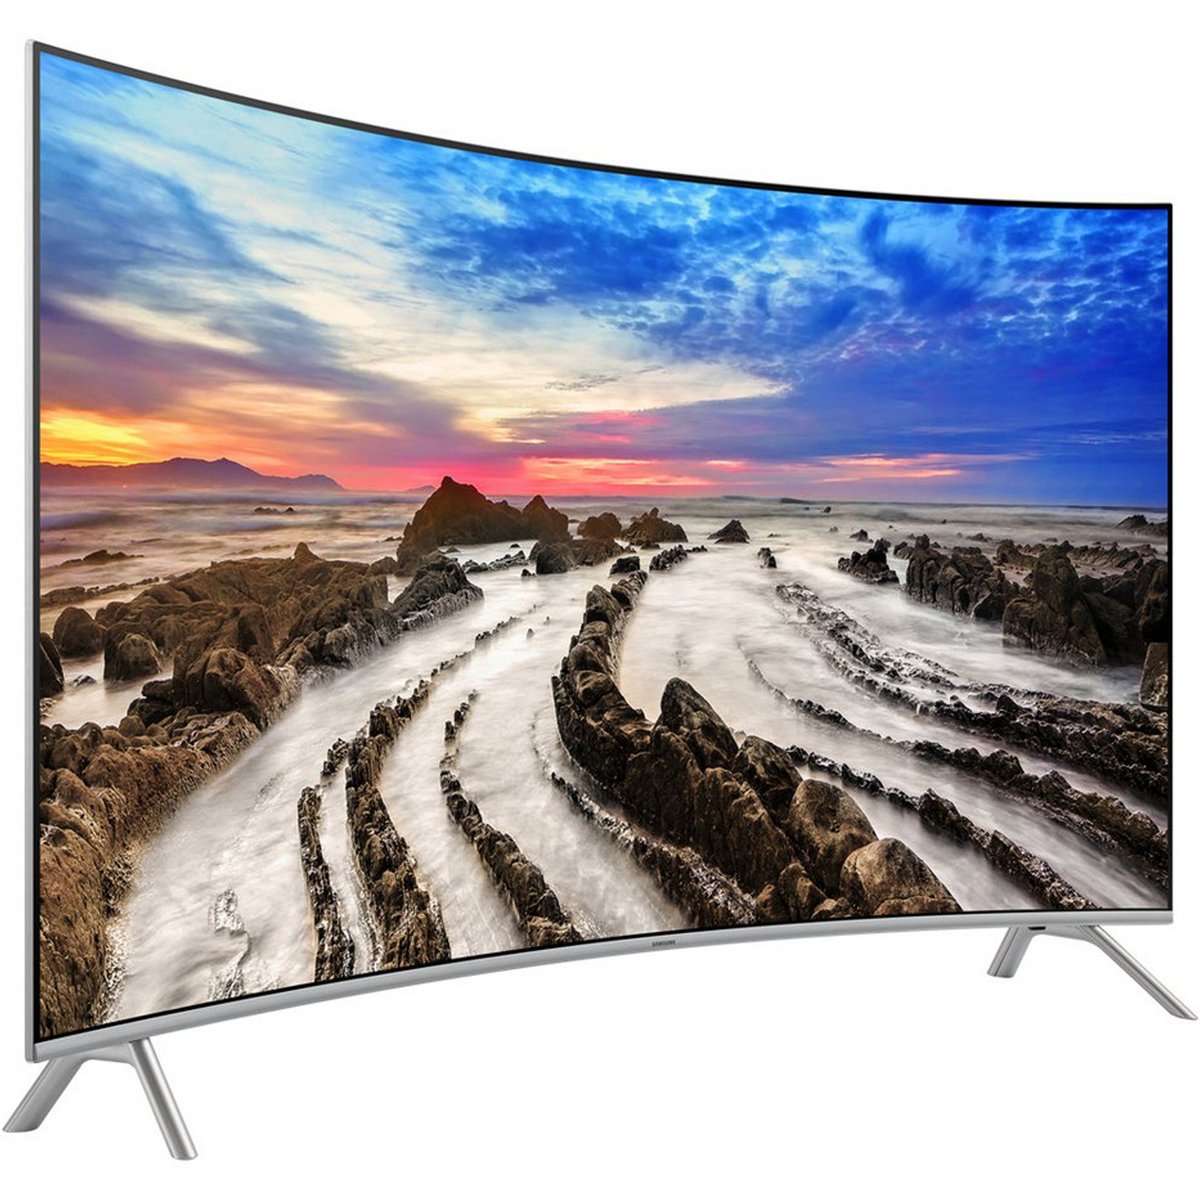 Samsung Premium Ultra HD 4K Curved Smart TV UA65MU8500 65inch